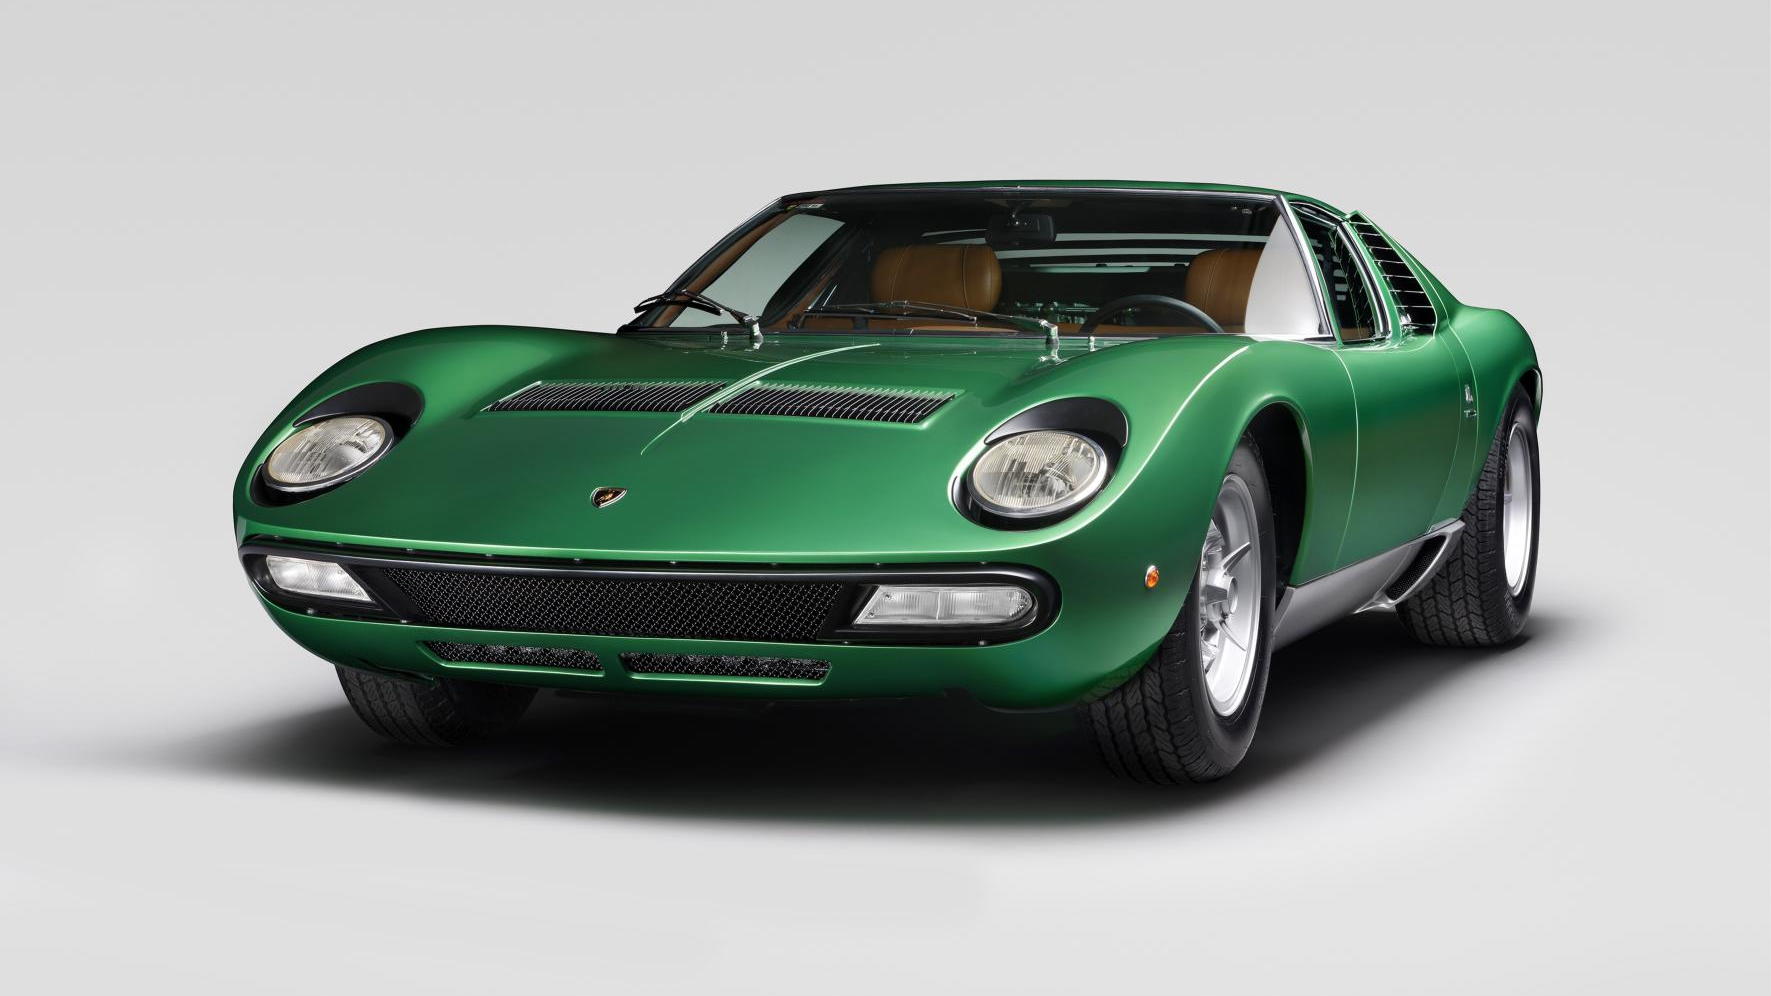 1971 Lamborghini Miura SV pre-production restored by Polo Storico